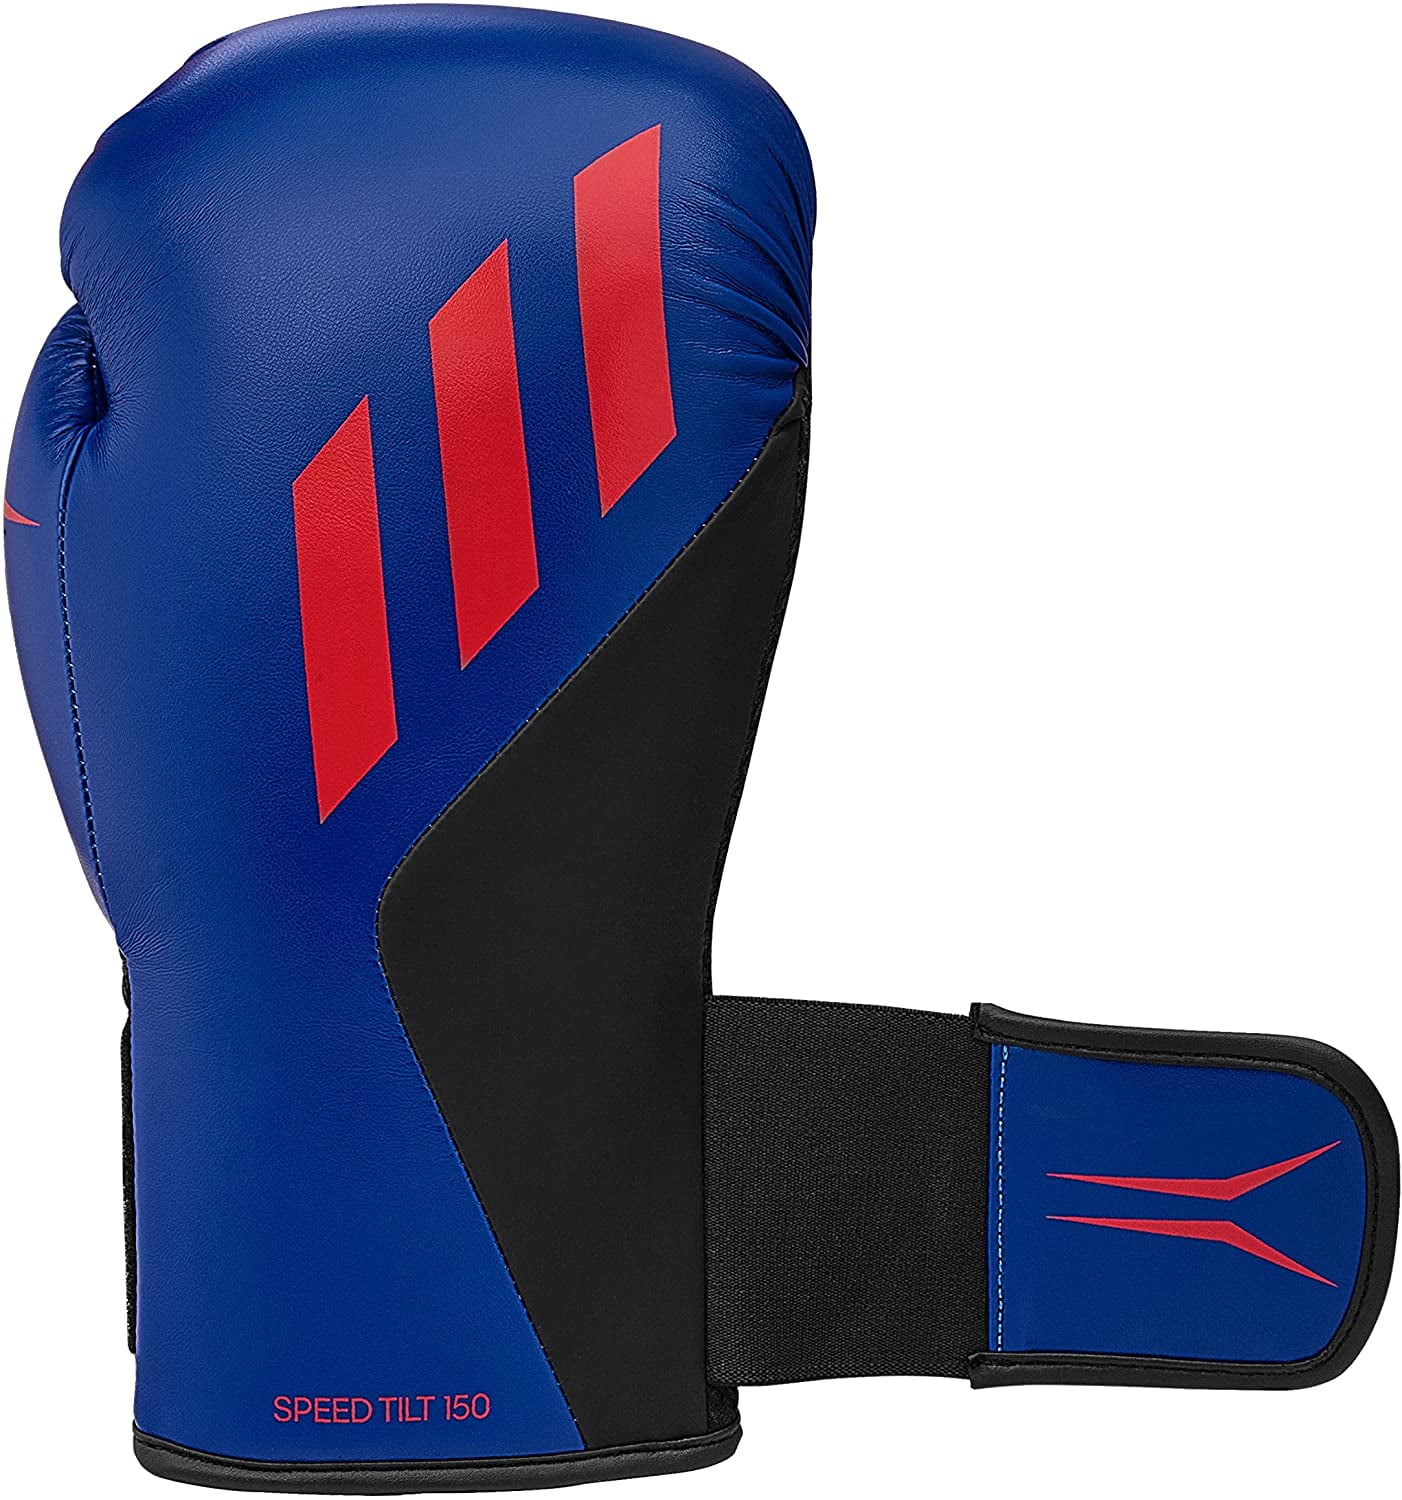 Adidas Speed TILT 150 Boxing Gloves - Training and Fighting Gloves for Men,  Women, Unisex, Royal/Mat Black/Solar, 14oz